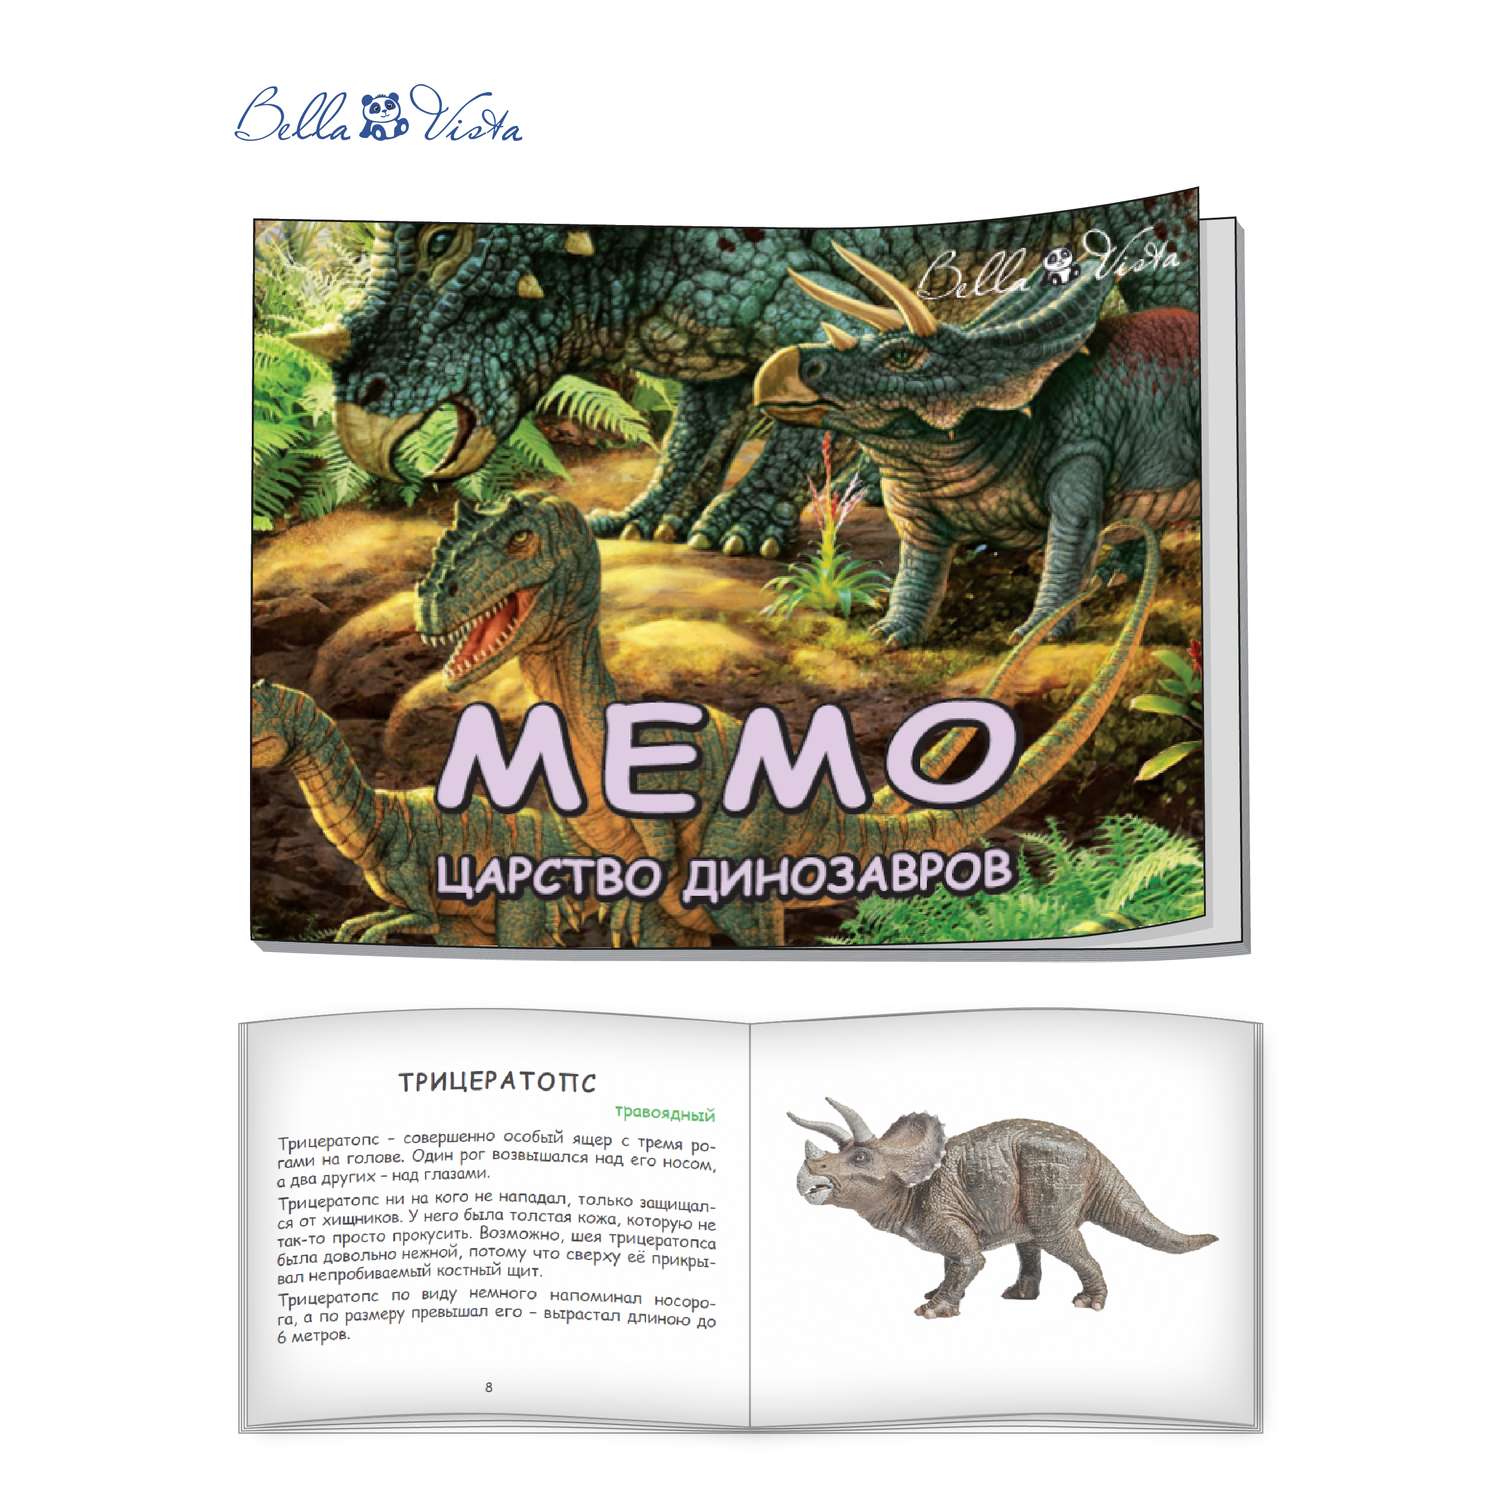 Игра Мемо BELLA VISTA Царство динозавров - фото 6